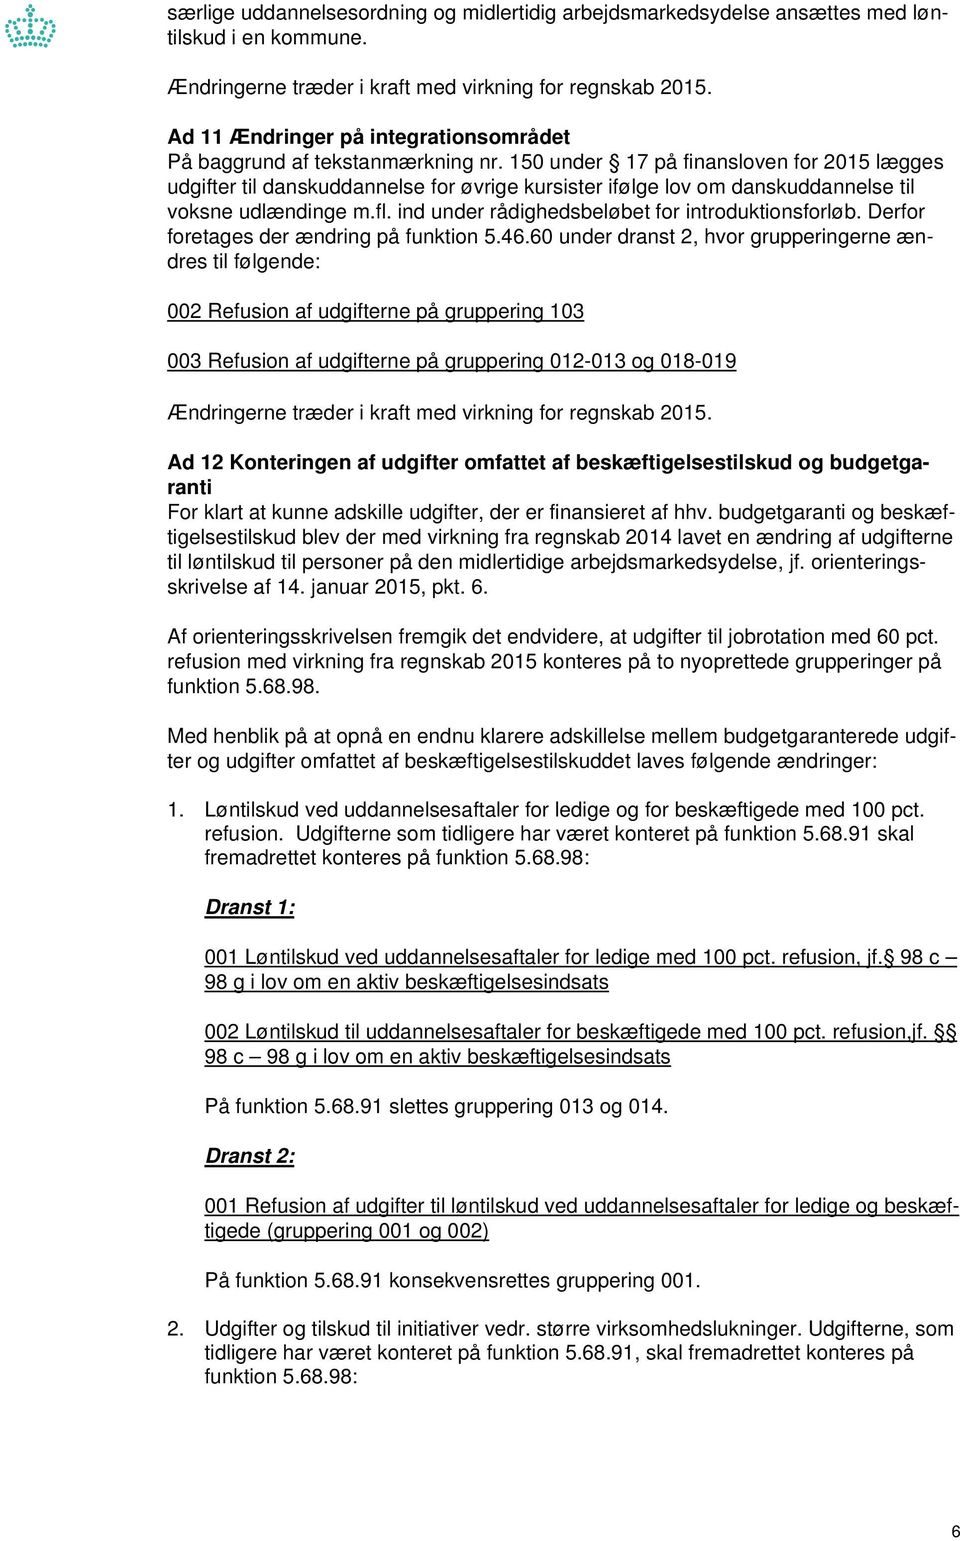 150 under 17 på finansloven for 2015 lægges udgifter til danskuddannelse for øvrige kursister ifølge lov om danskuddannelse til voksne udlændinge m.fl.